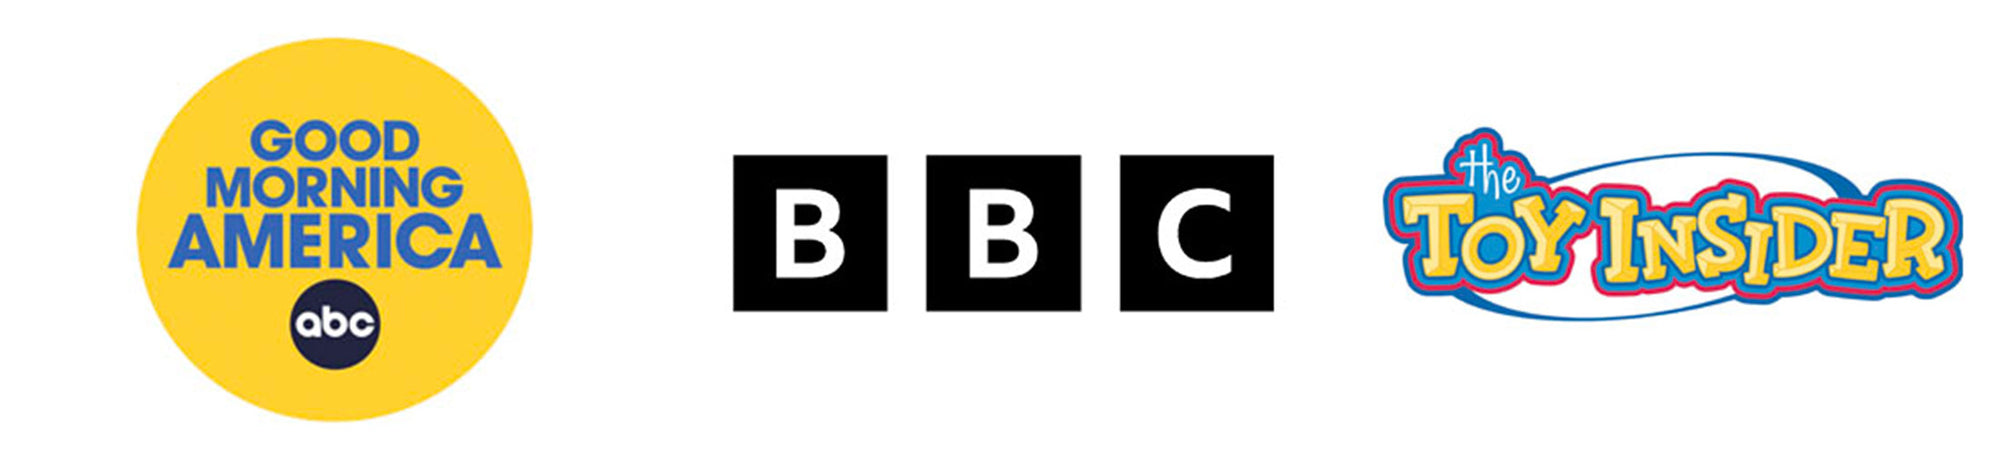 Logos - Good Morning America, BBC, ToyInsider